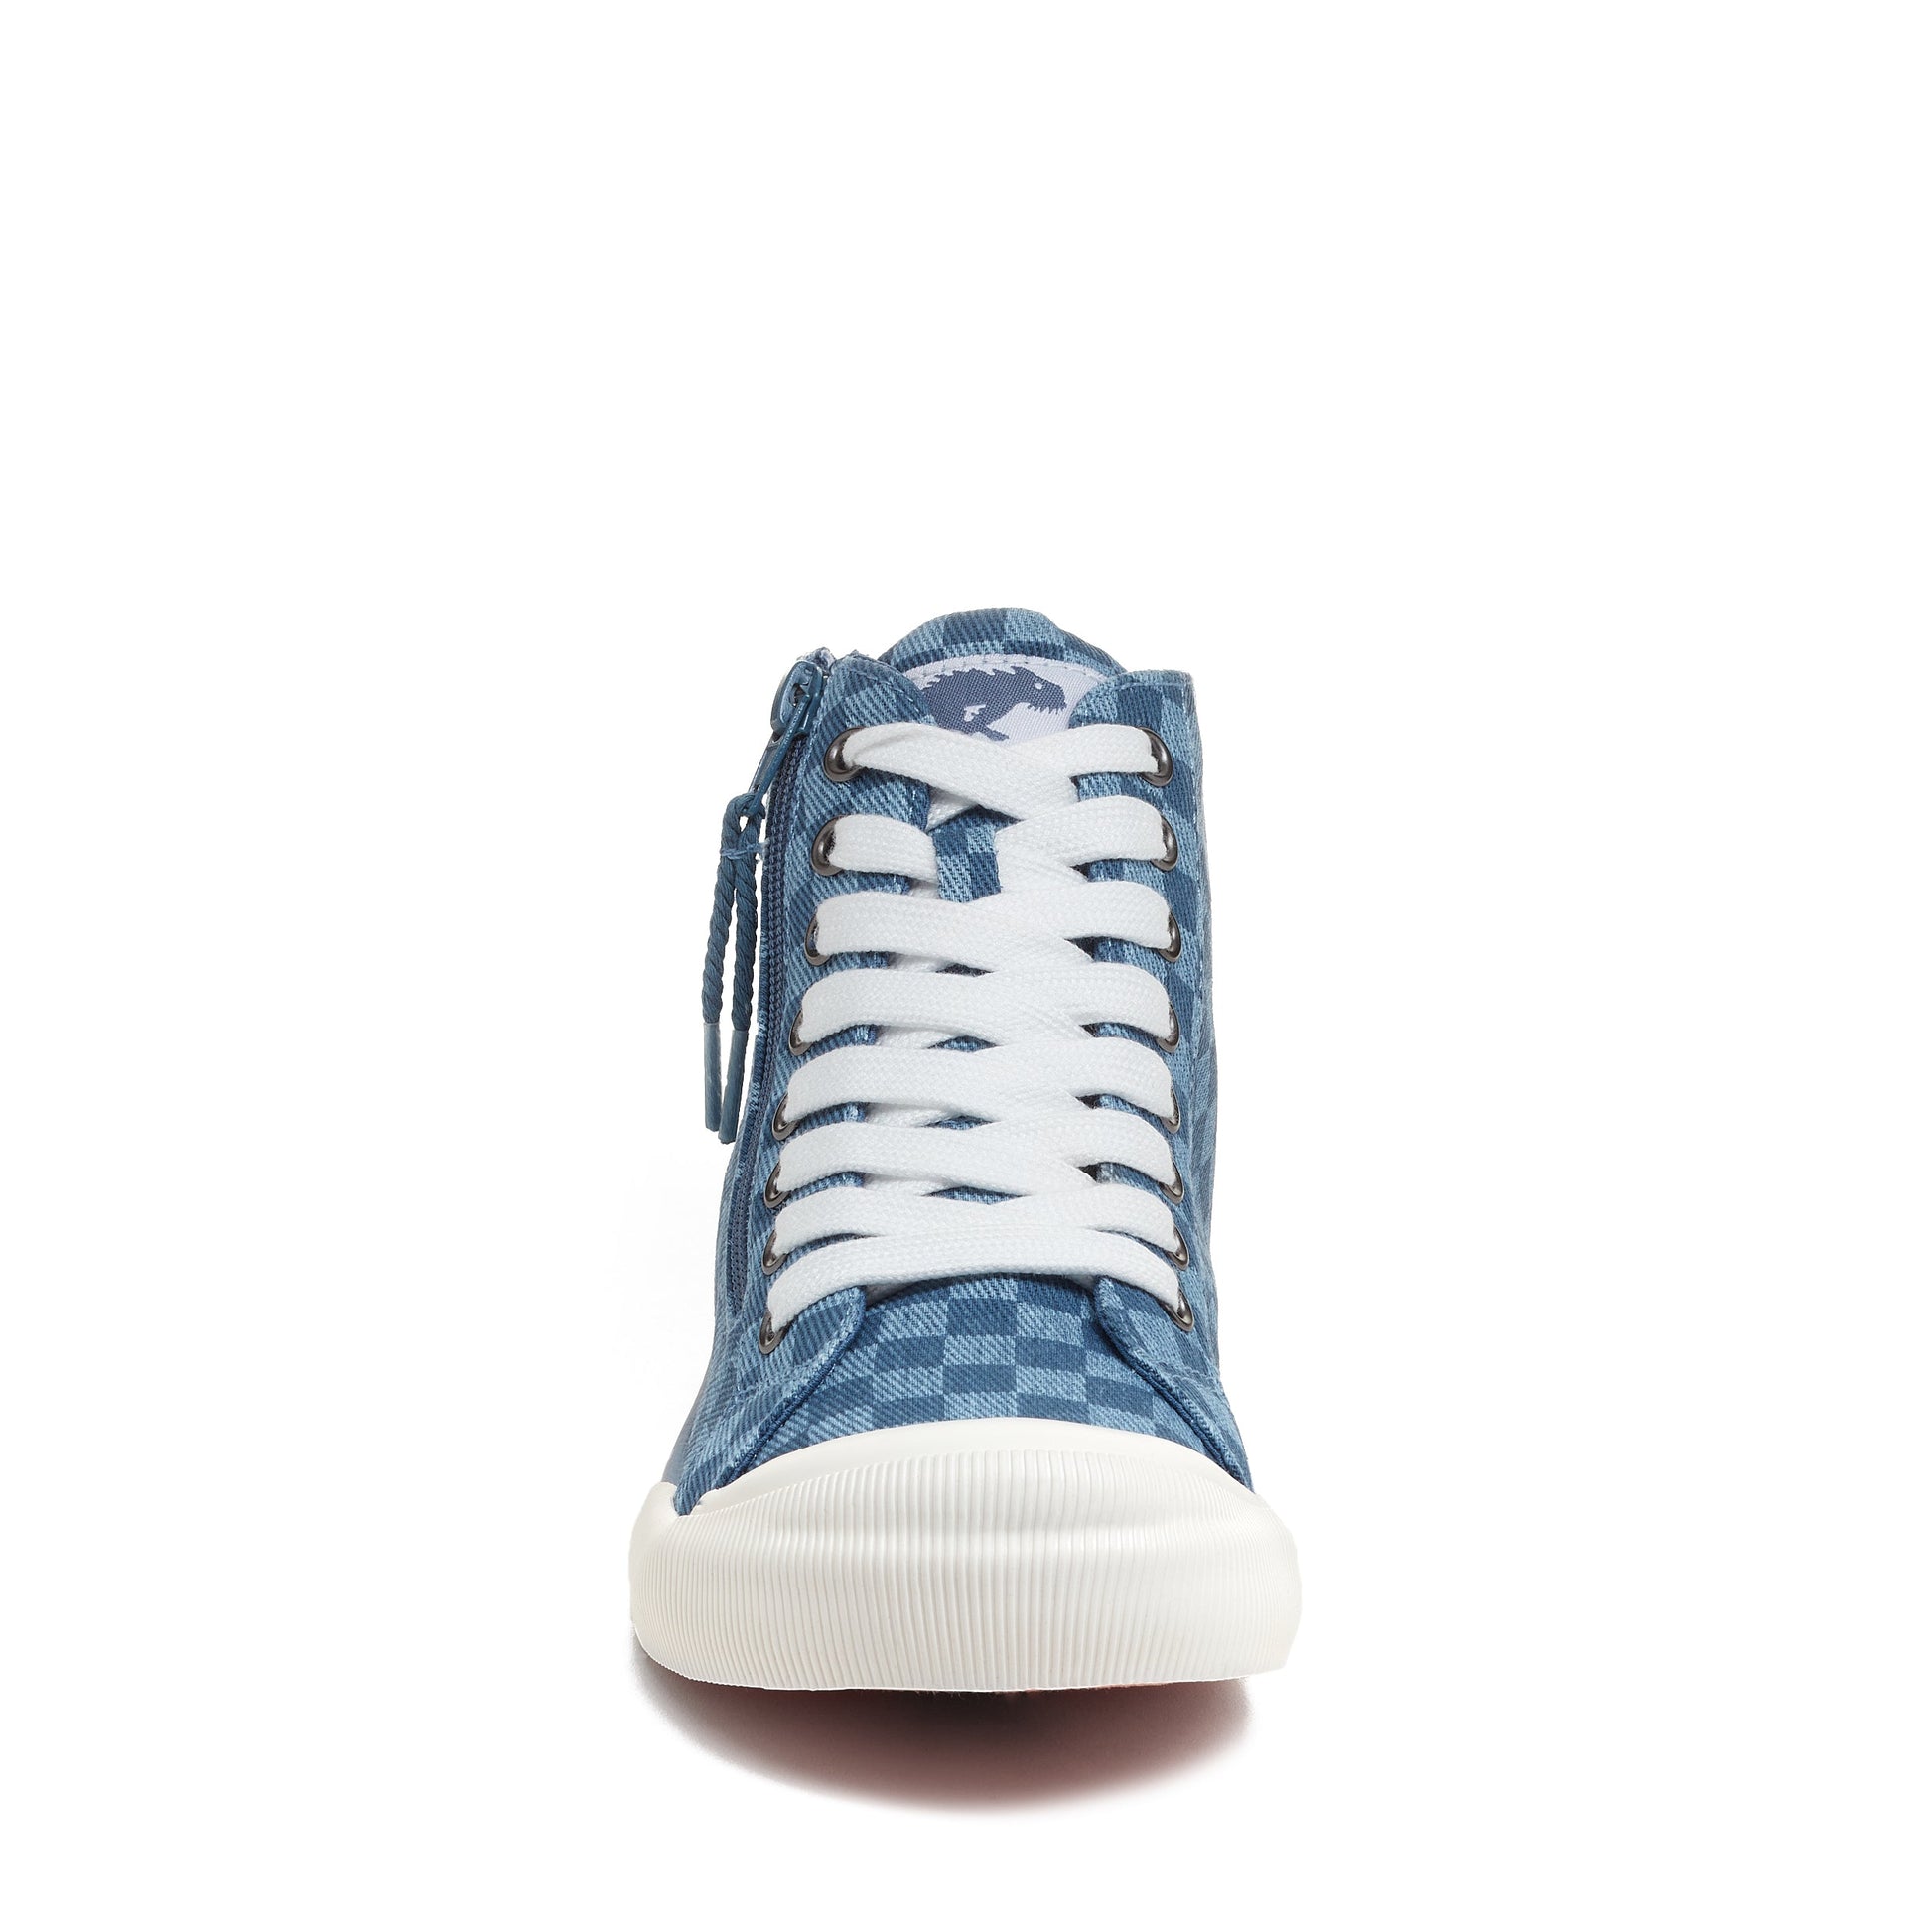 Rocket Dog® Jazzin Blue Checkered High Top Sneaker